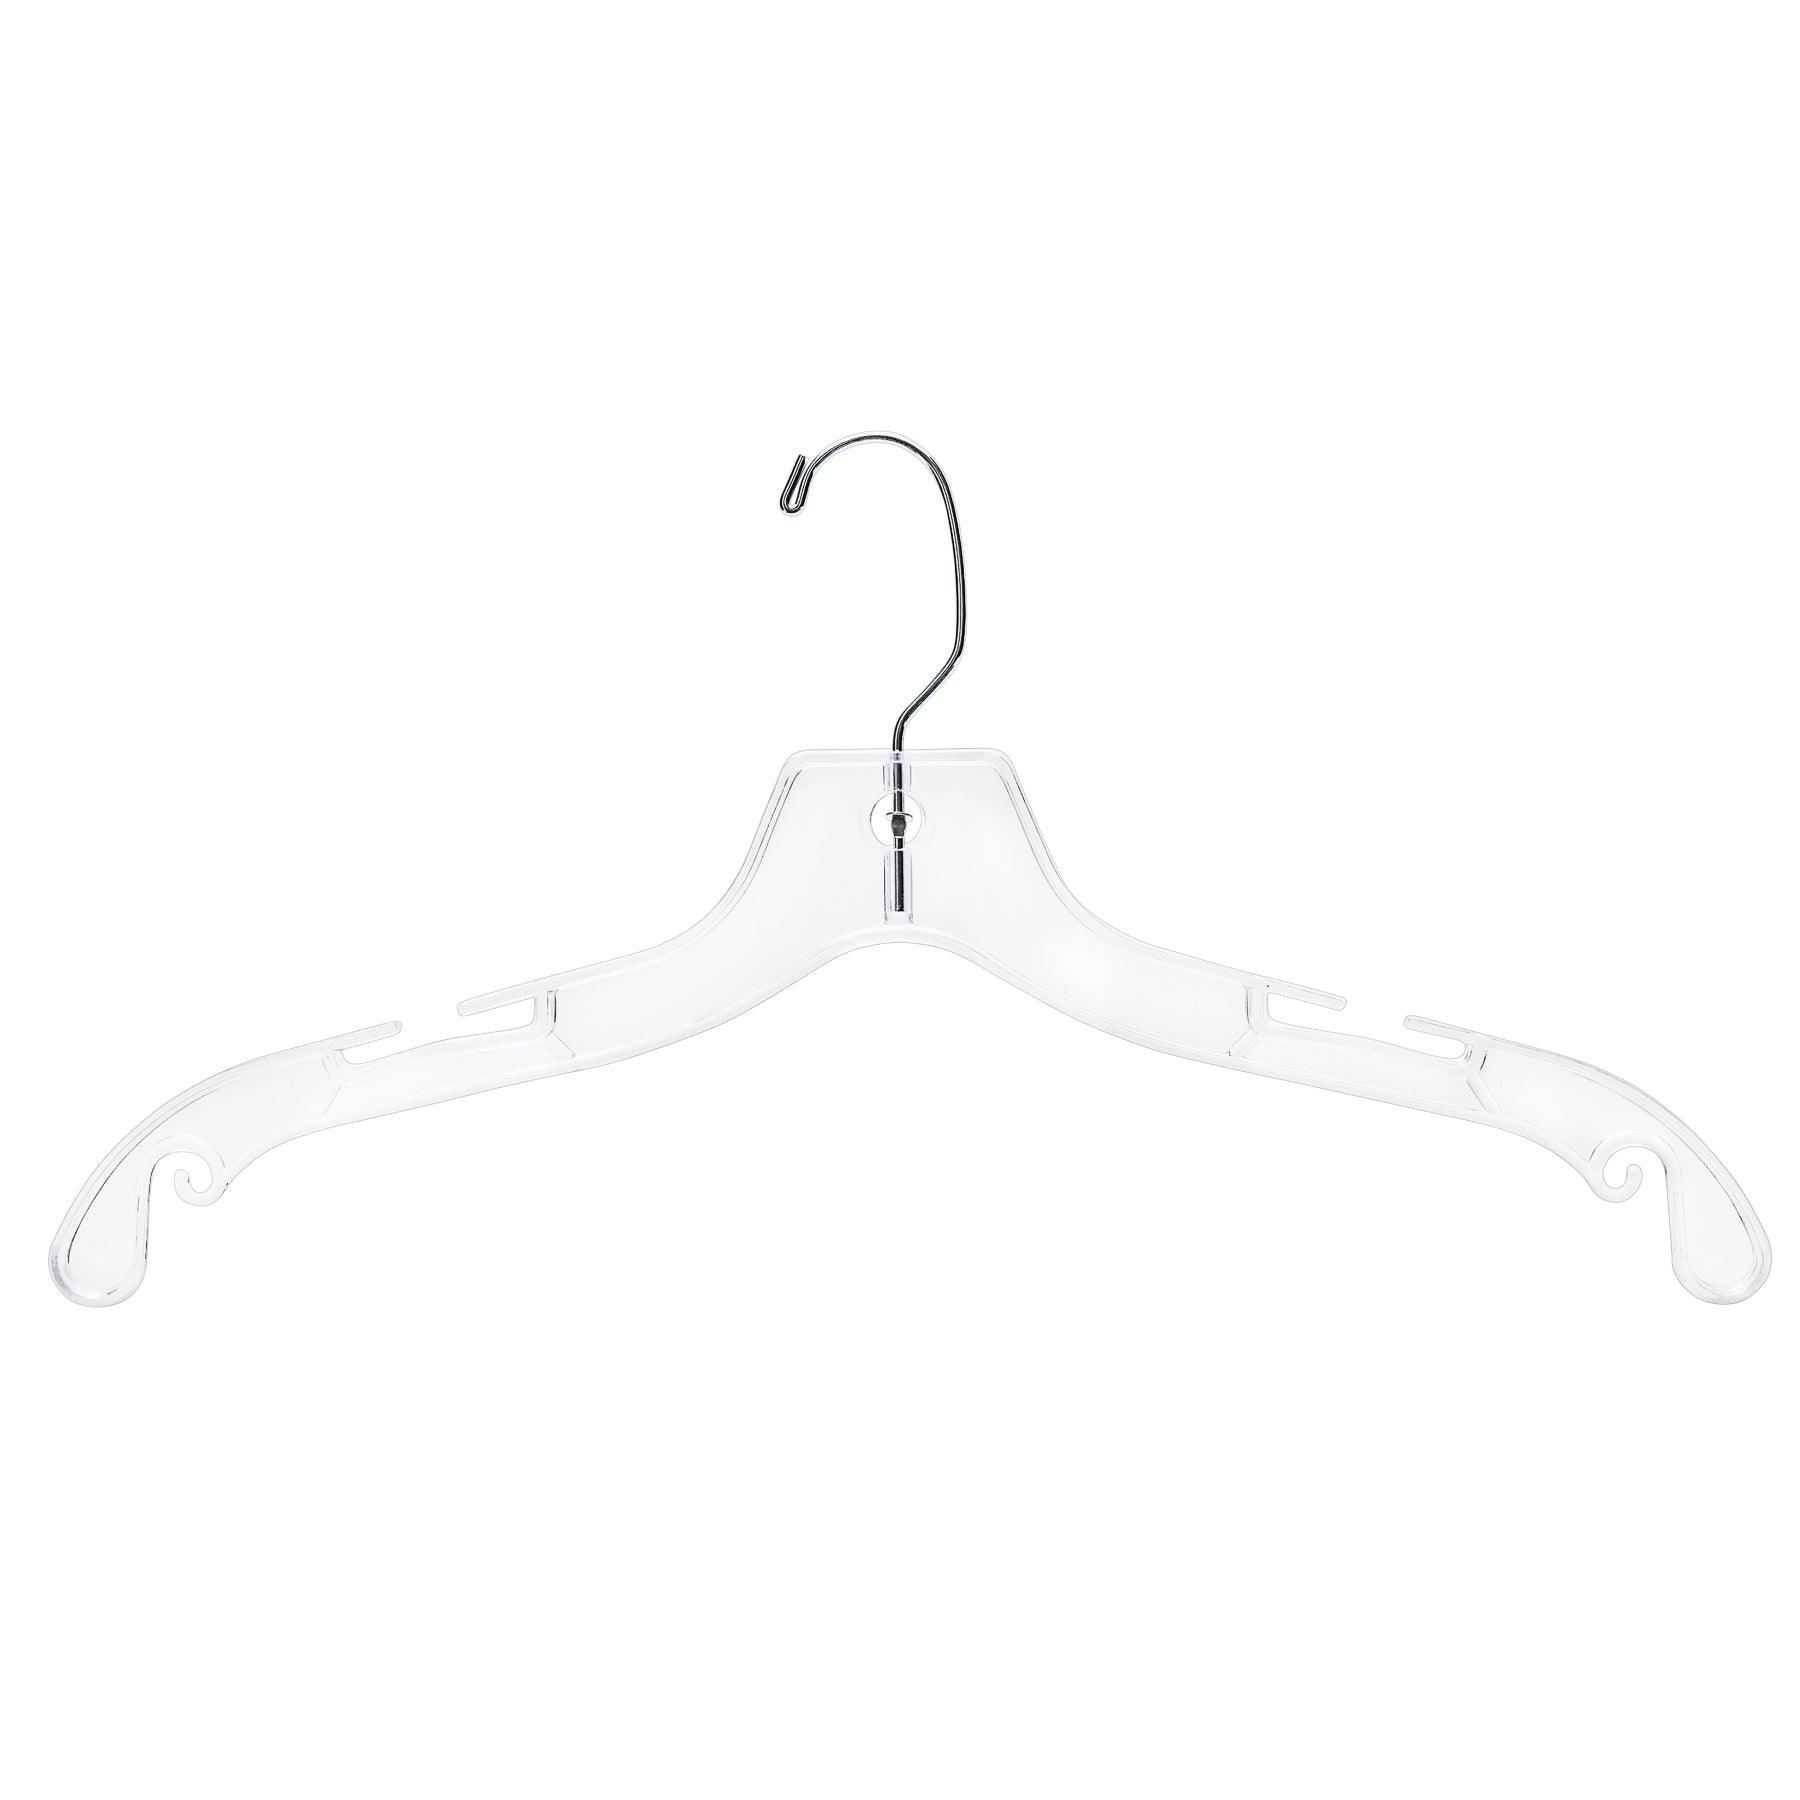 Clear Plastic Coat Hanger - 43cm - (Sold in Bundles of 25/50/100) - Hangersforless